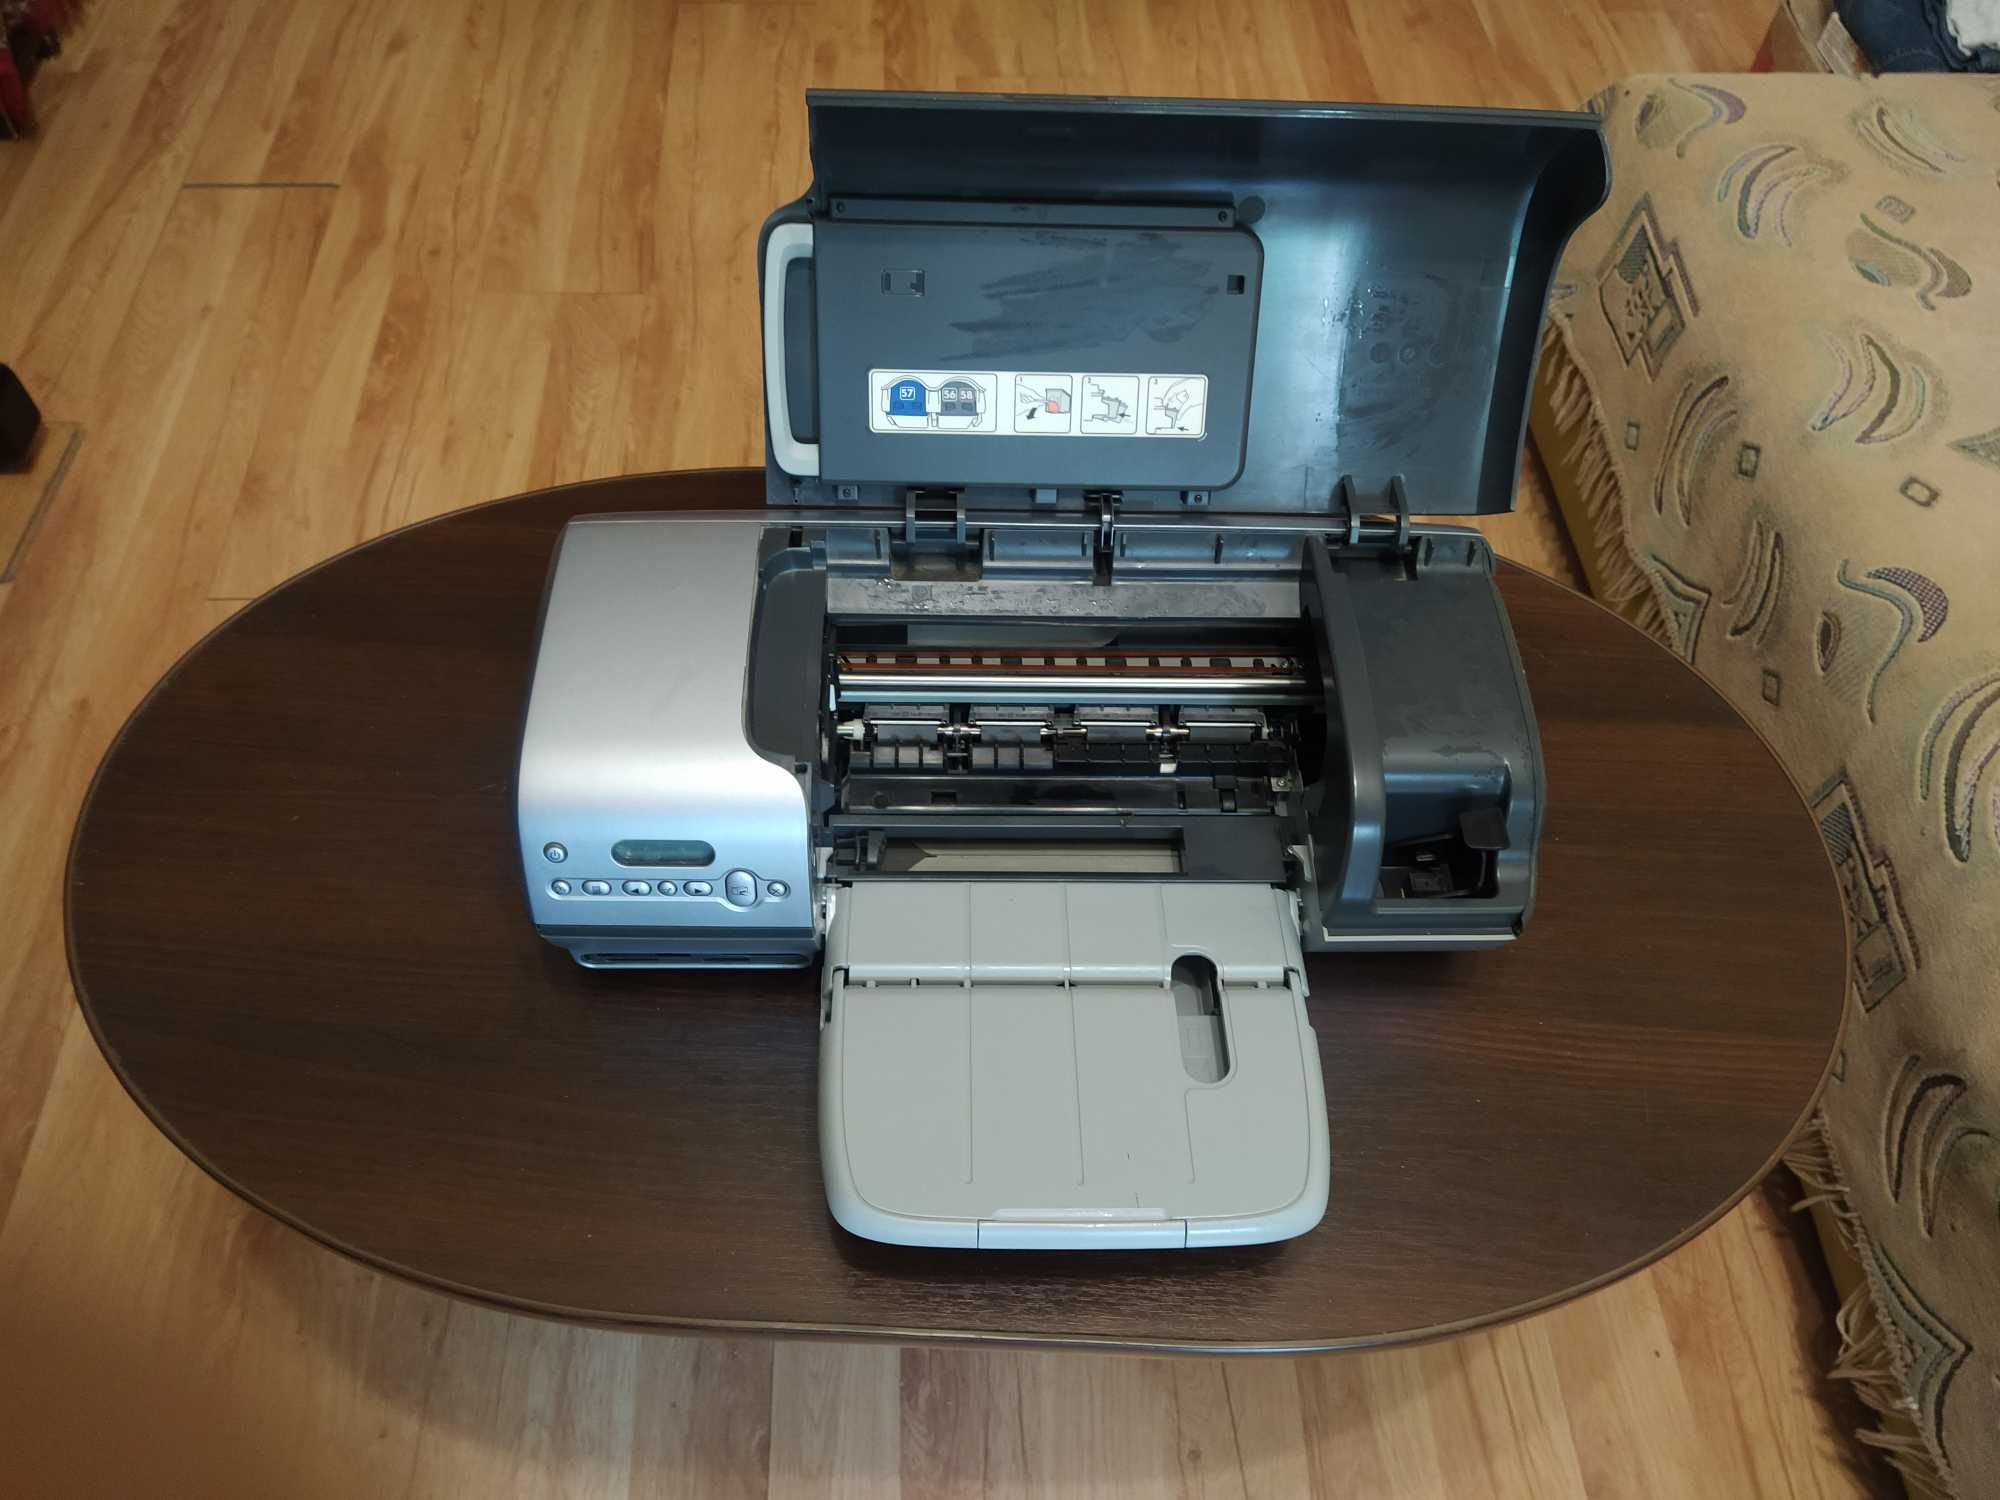 Струйный цветной принтер HP Photosmart 7450